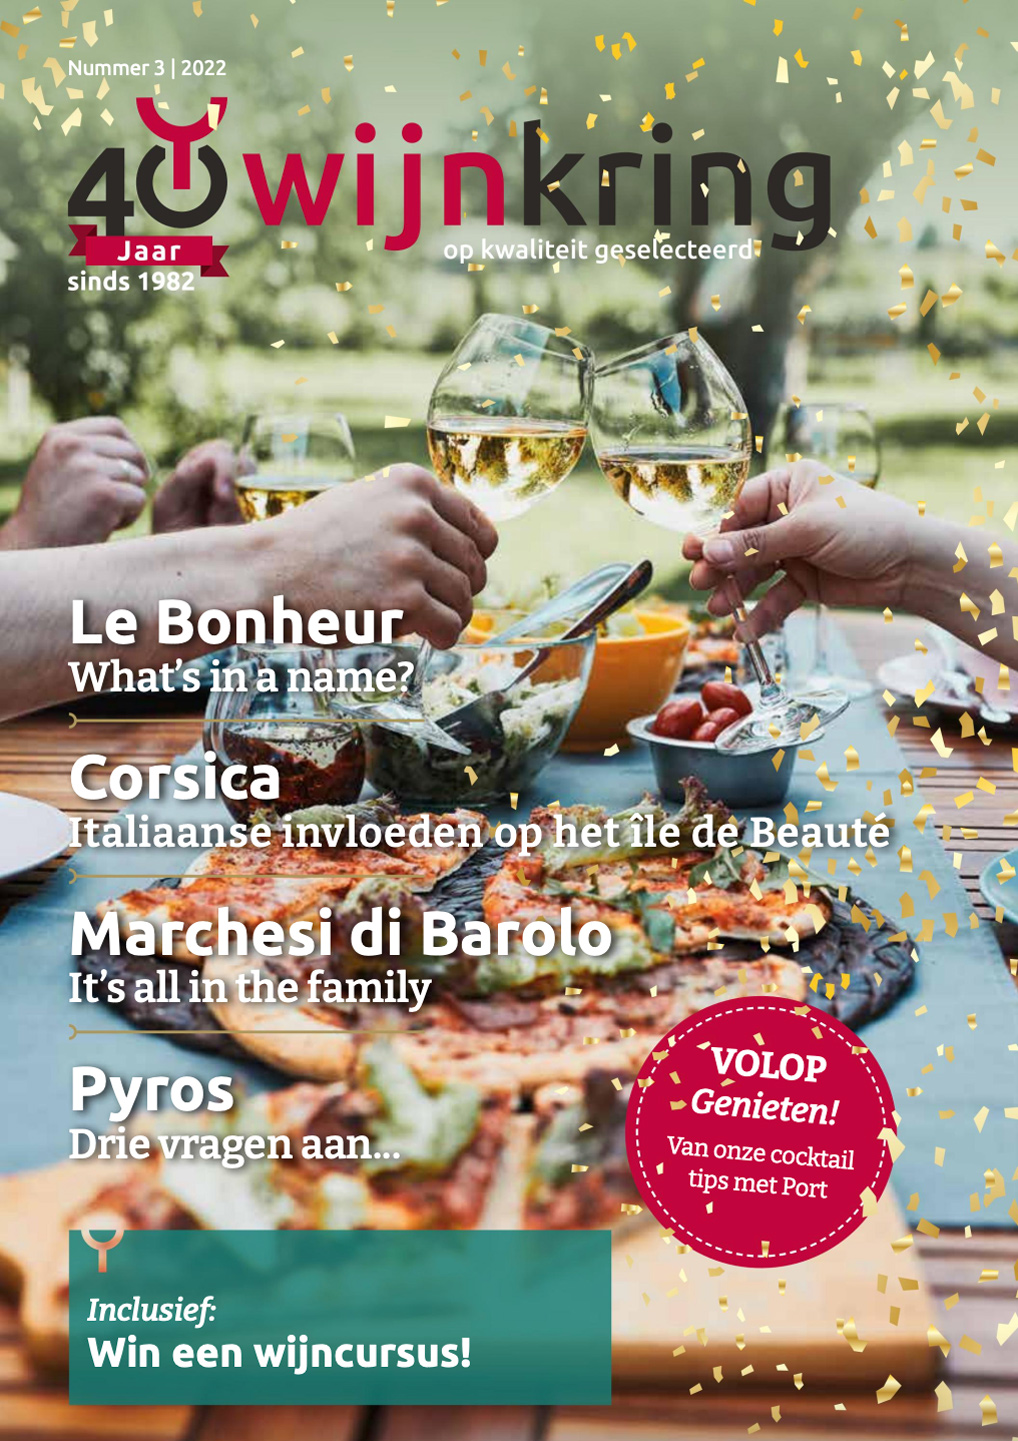 Wijnkring cover magazine